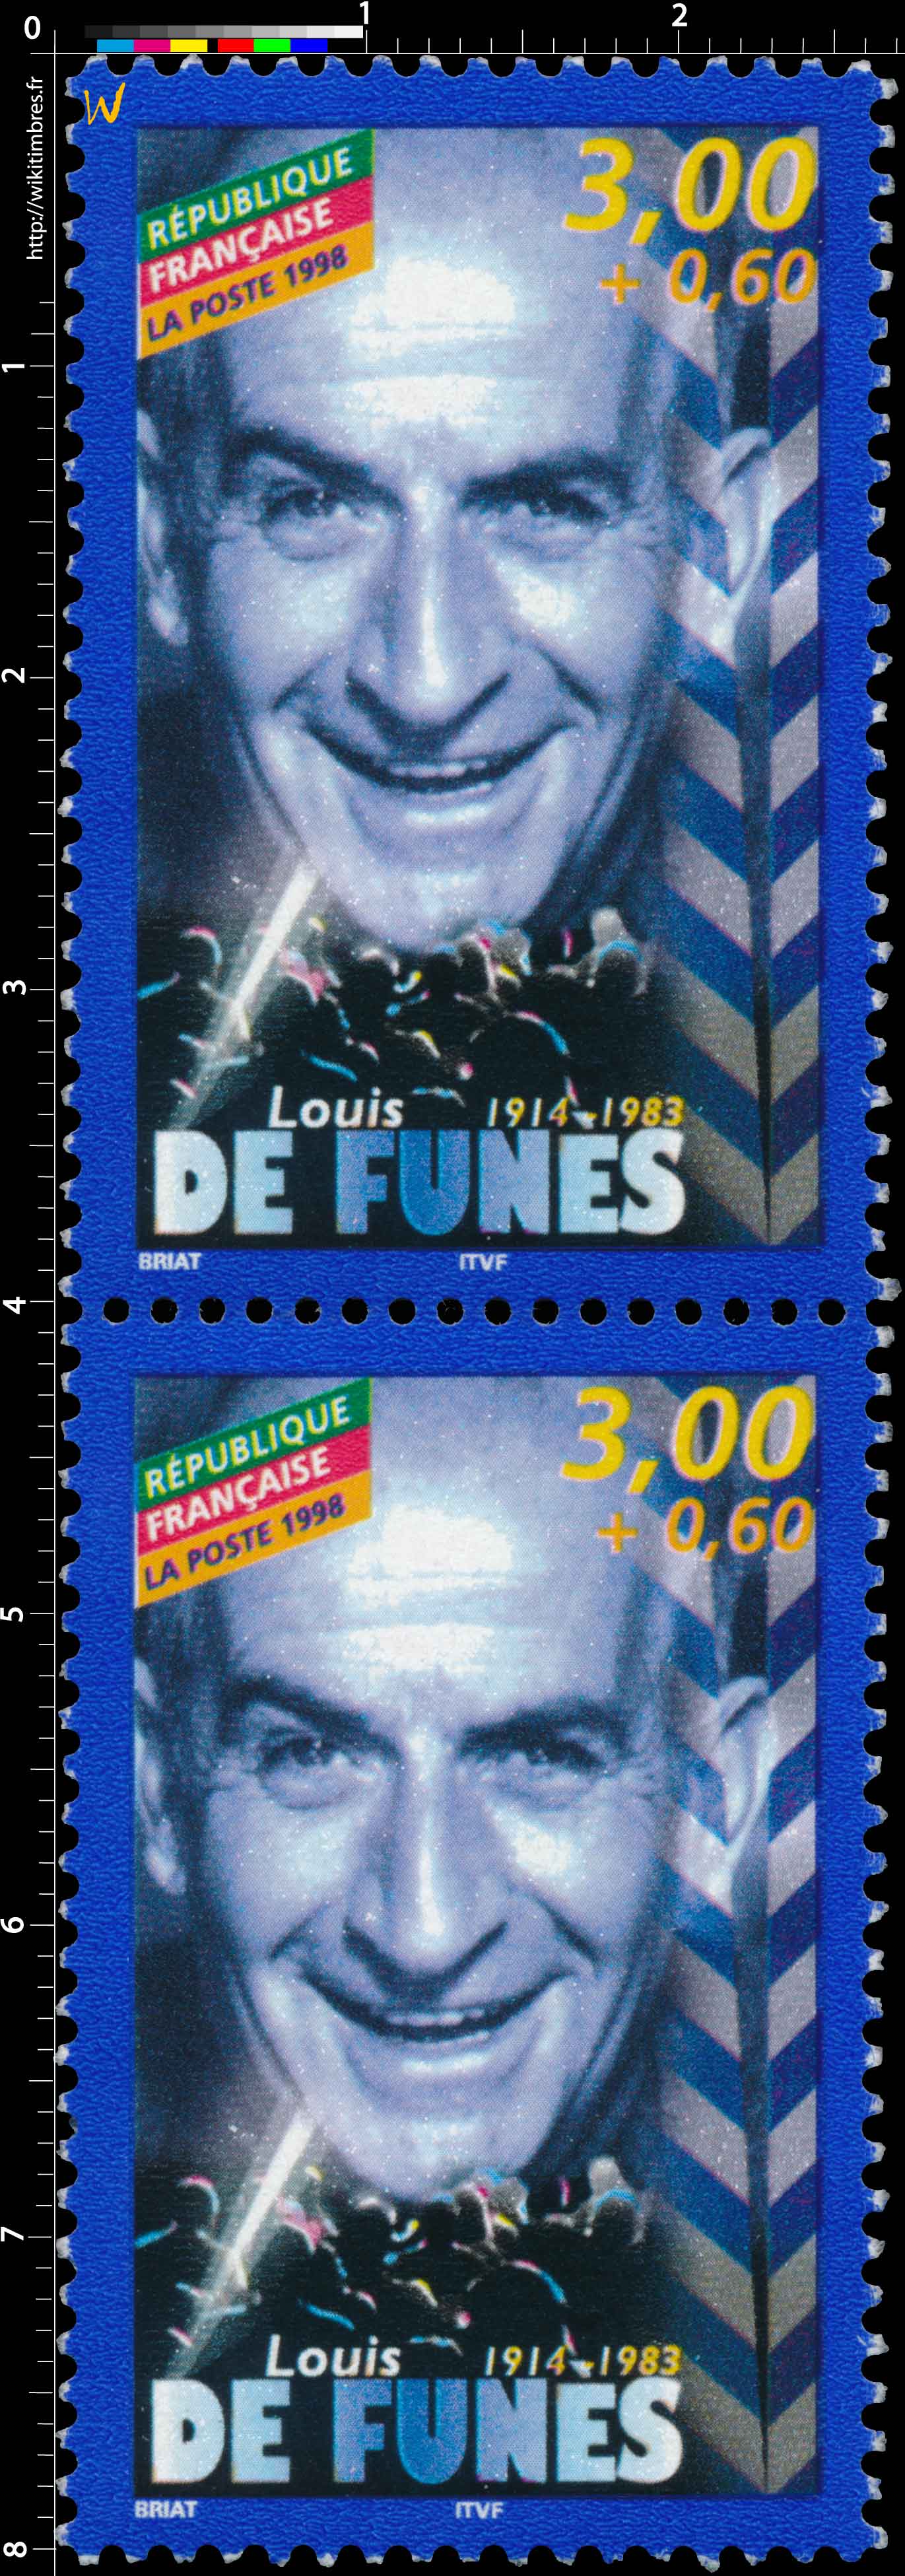 1998 Louis DE FUNÈS 1914-1983